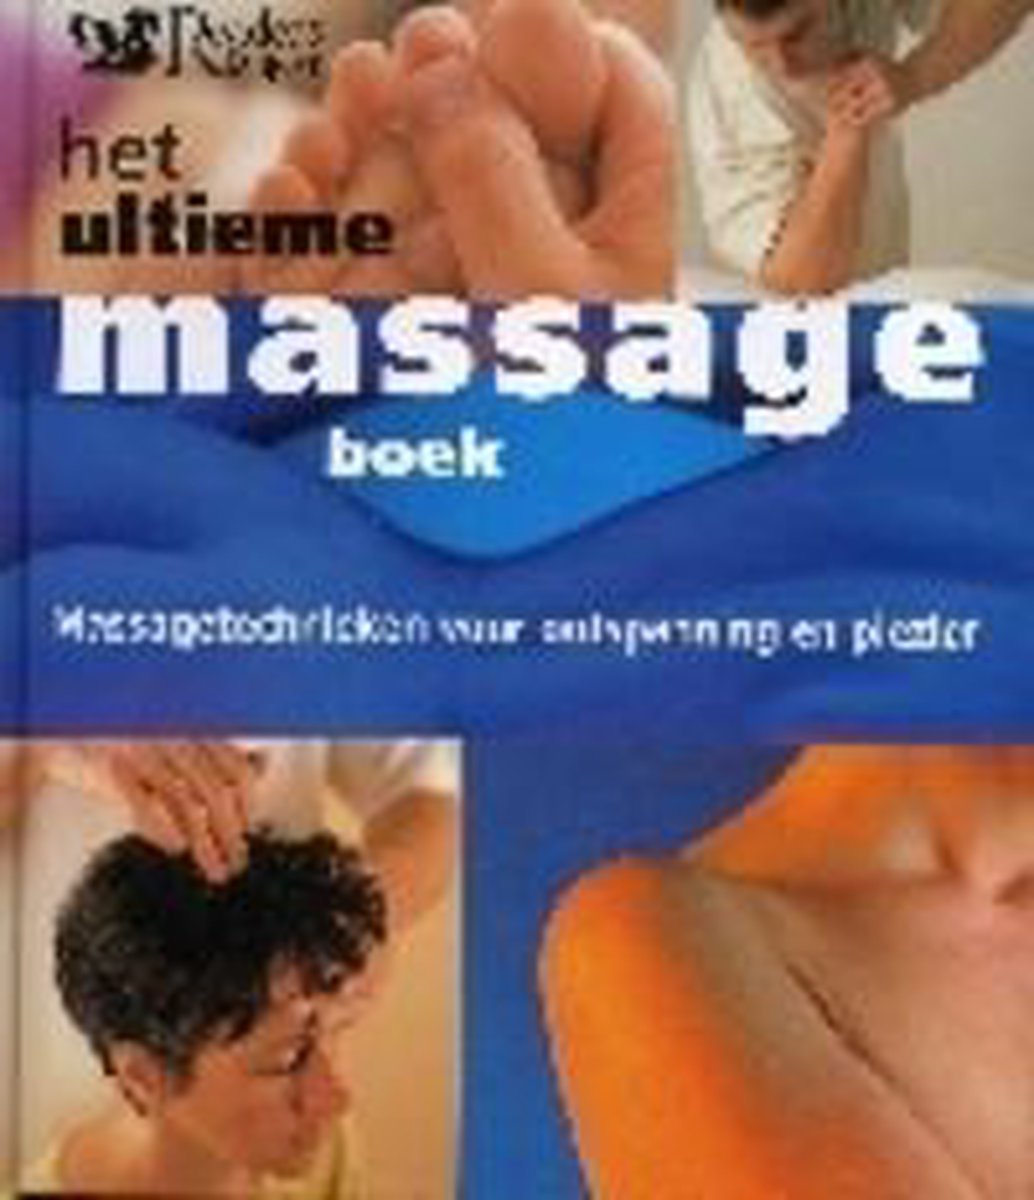 Het Ultieme Massage Boek